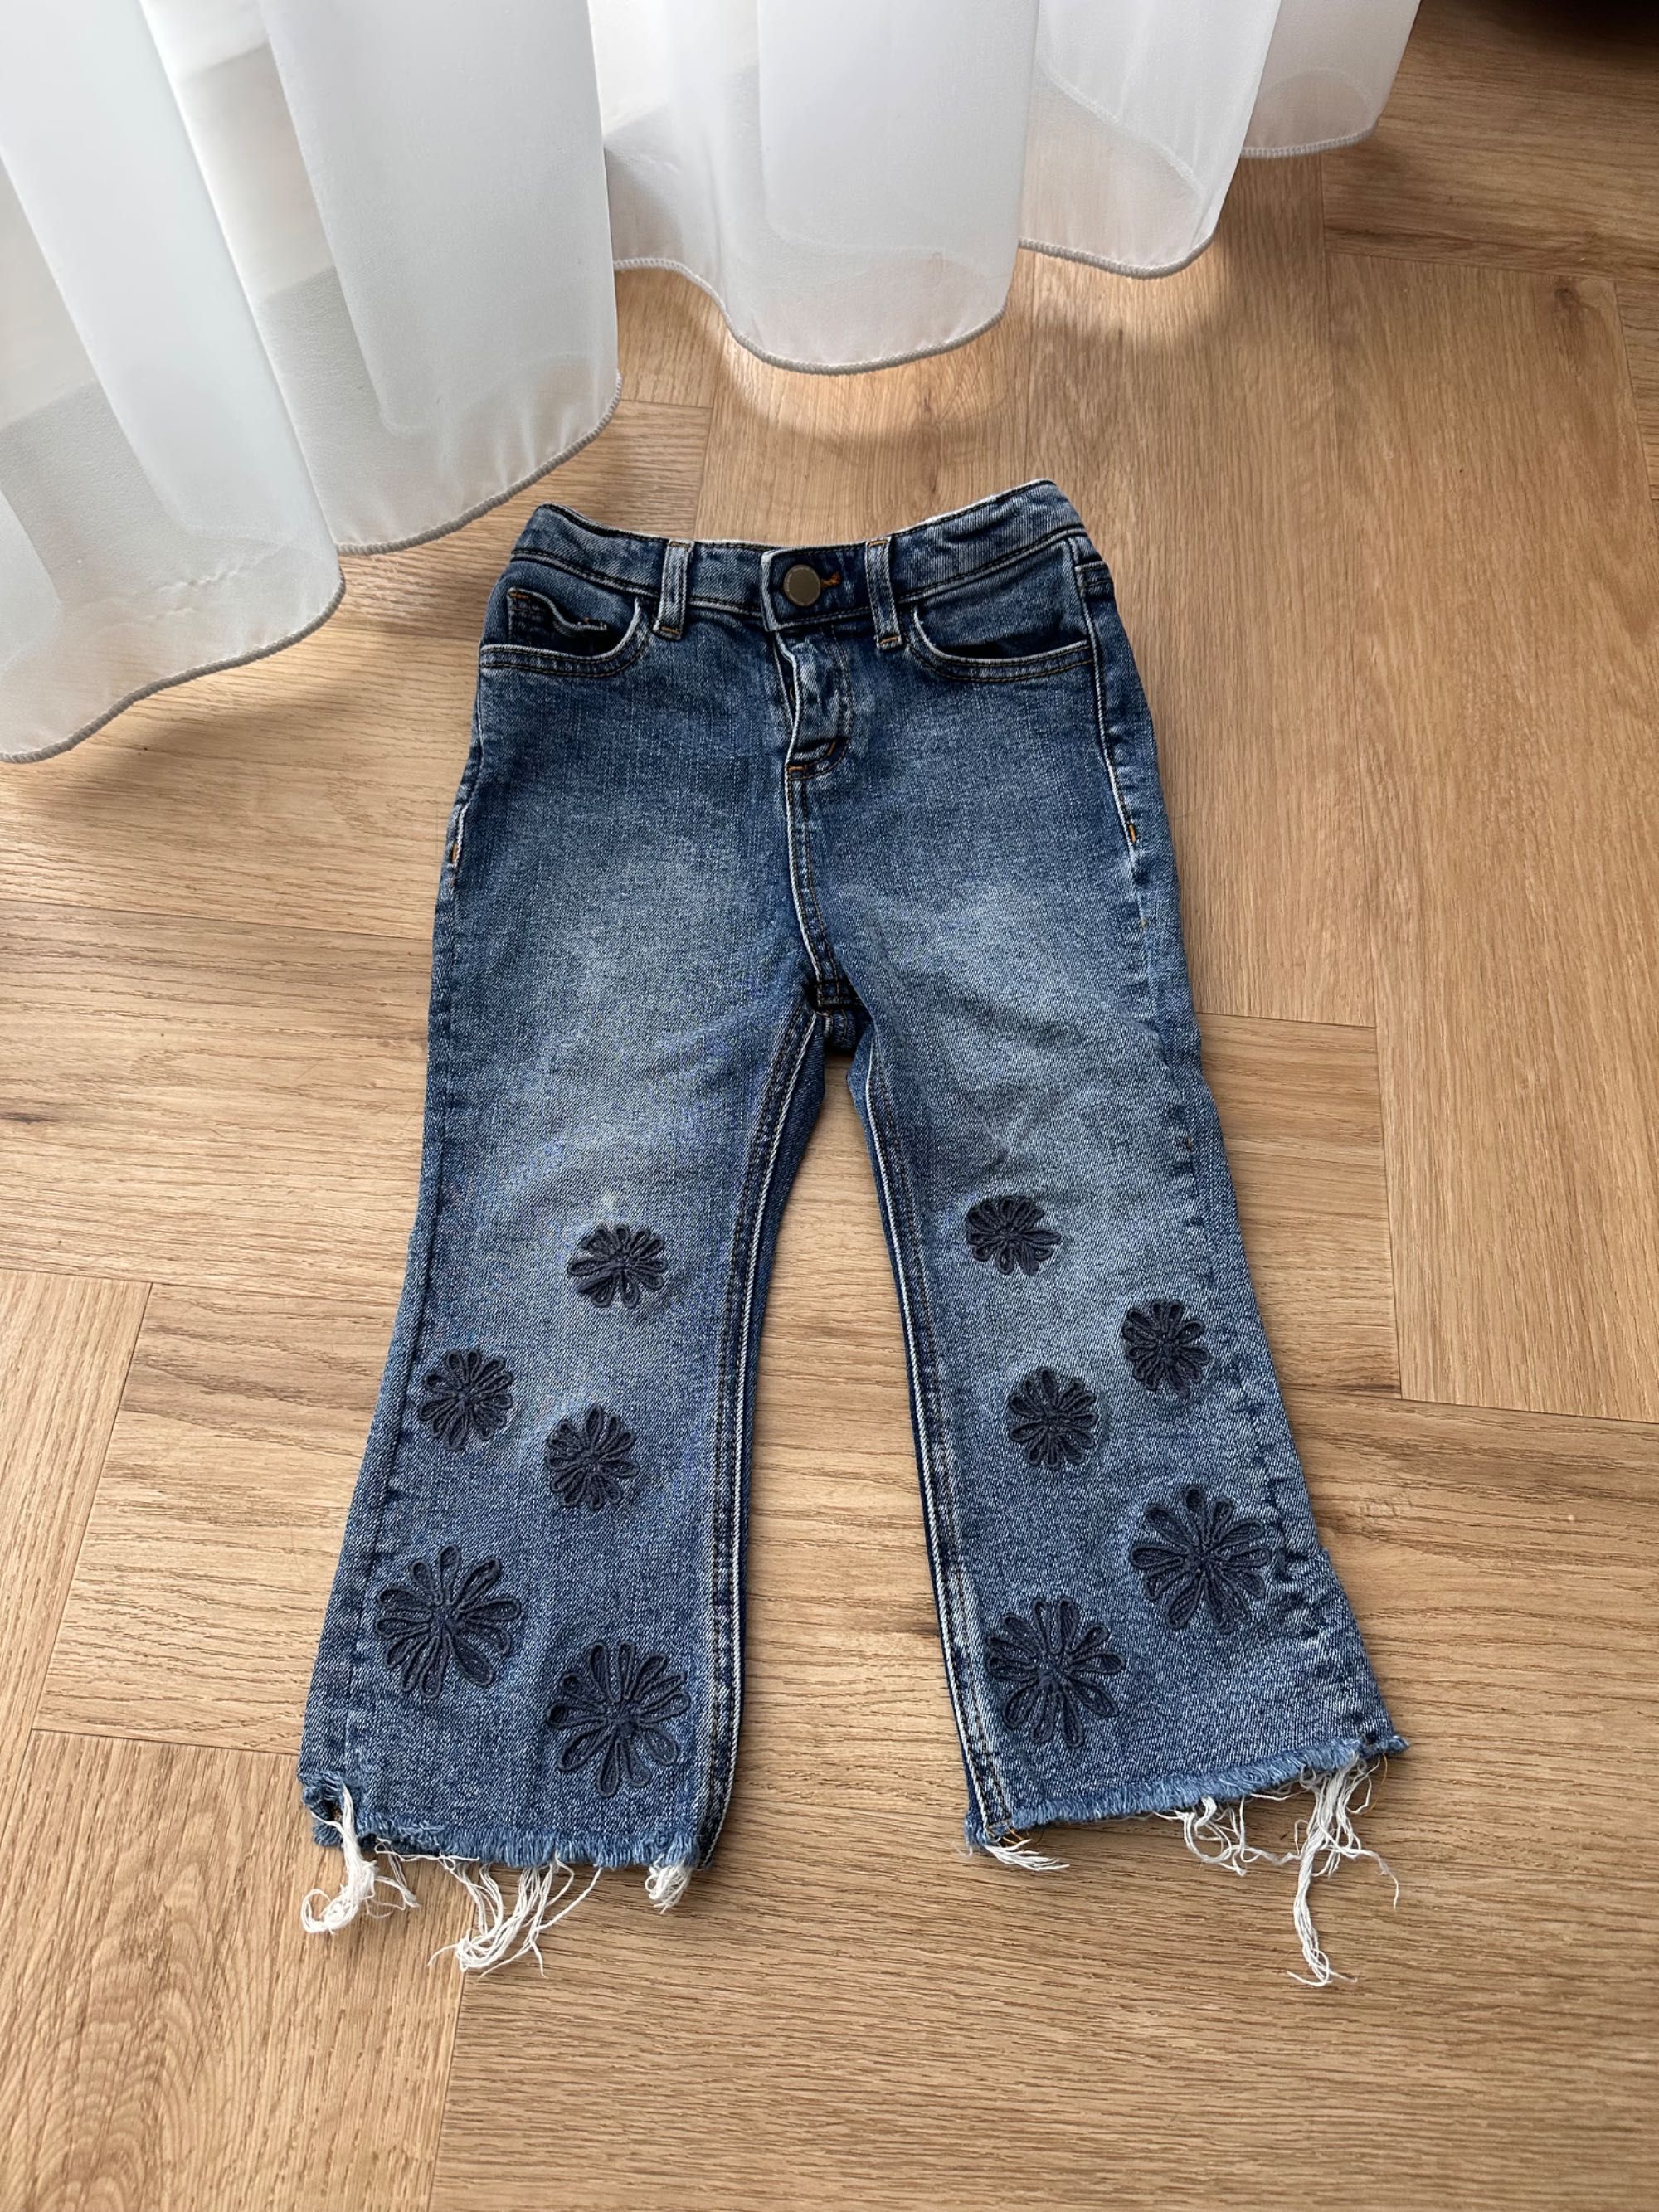 Jeans Desigual pentru fetite, 98-104